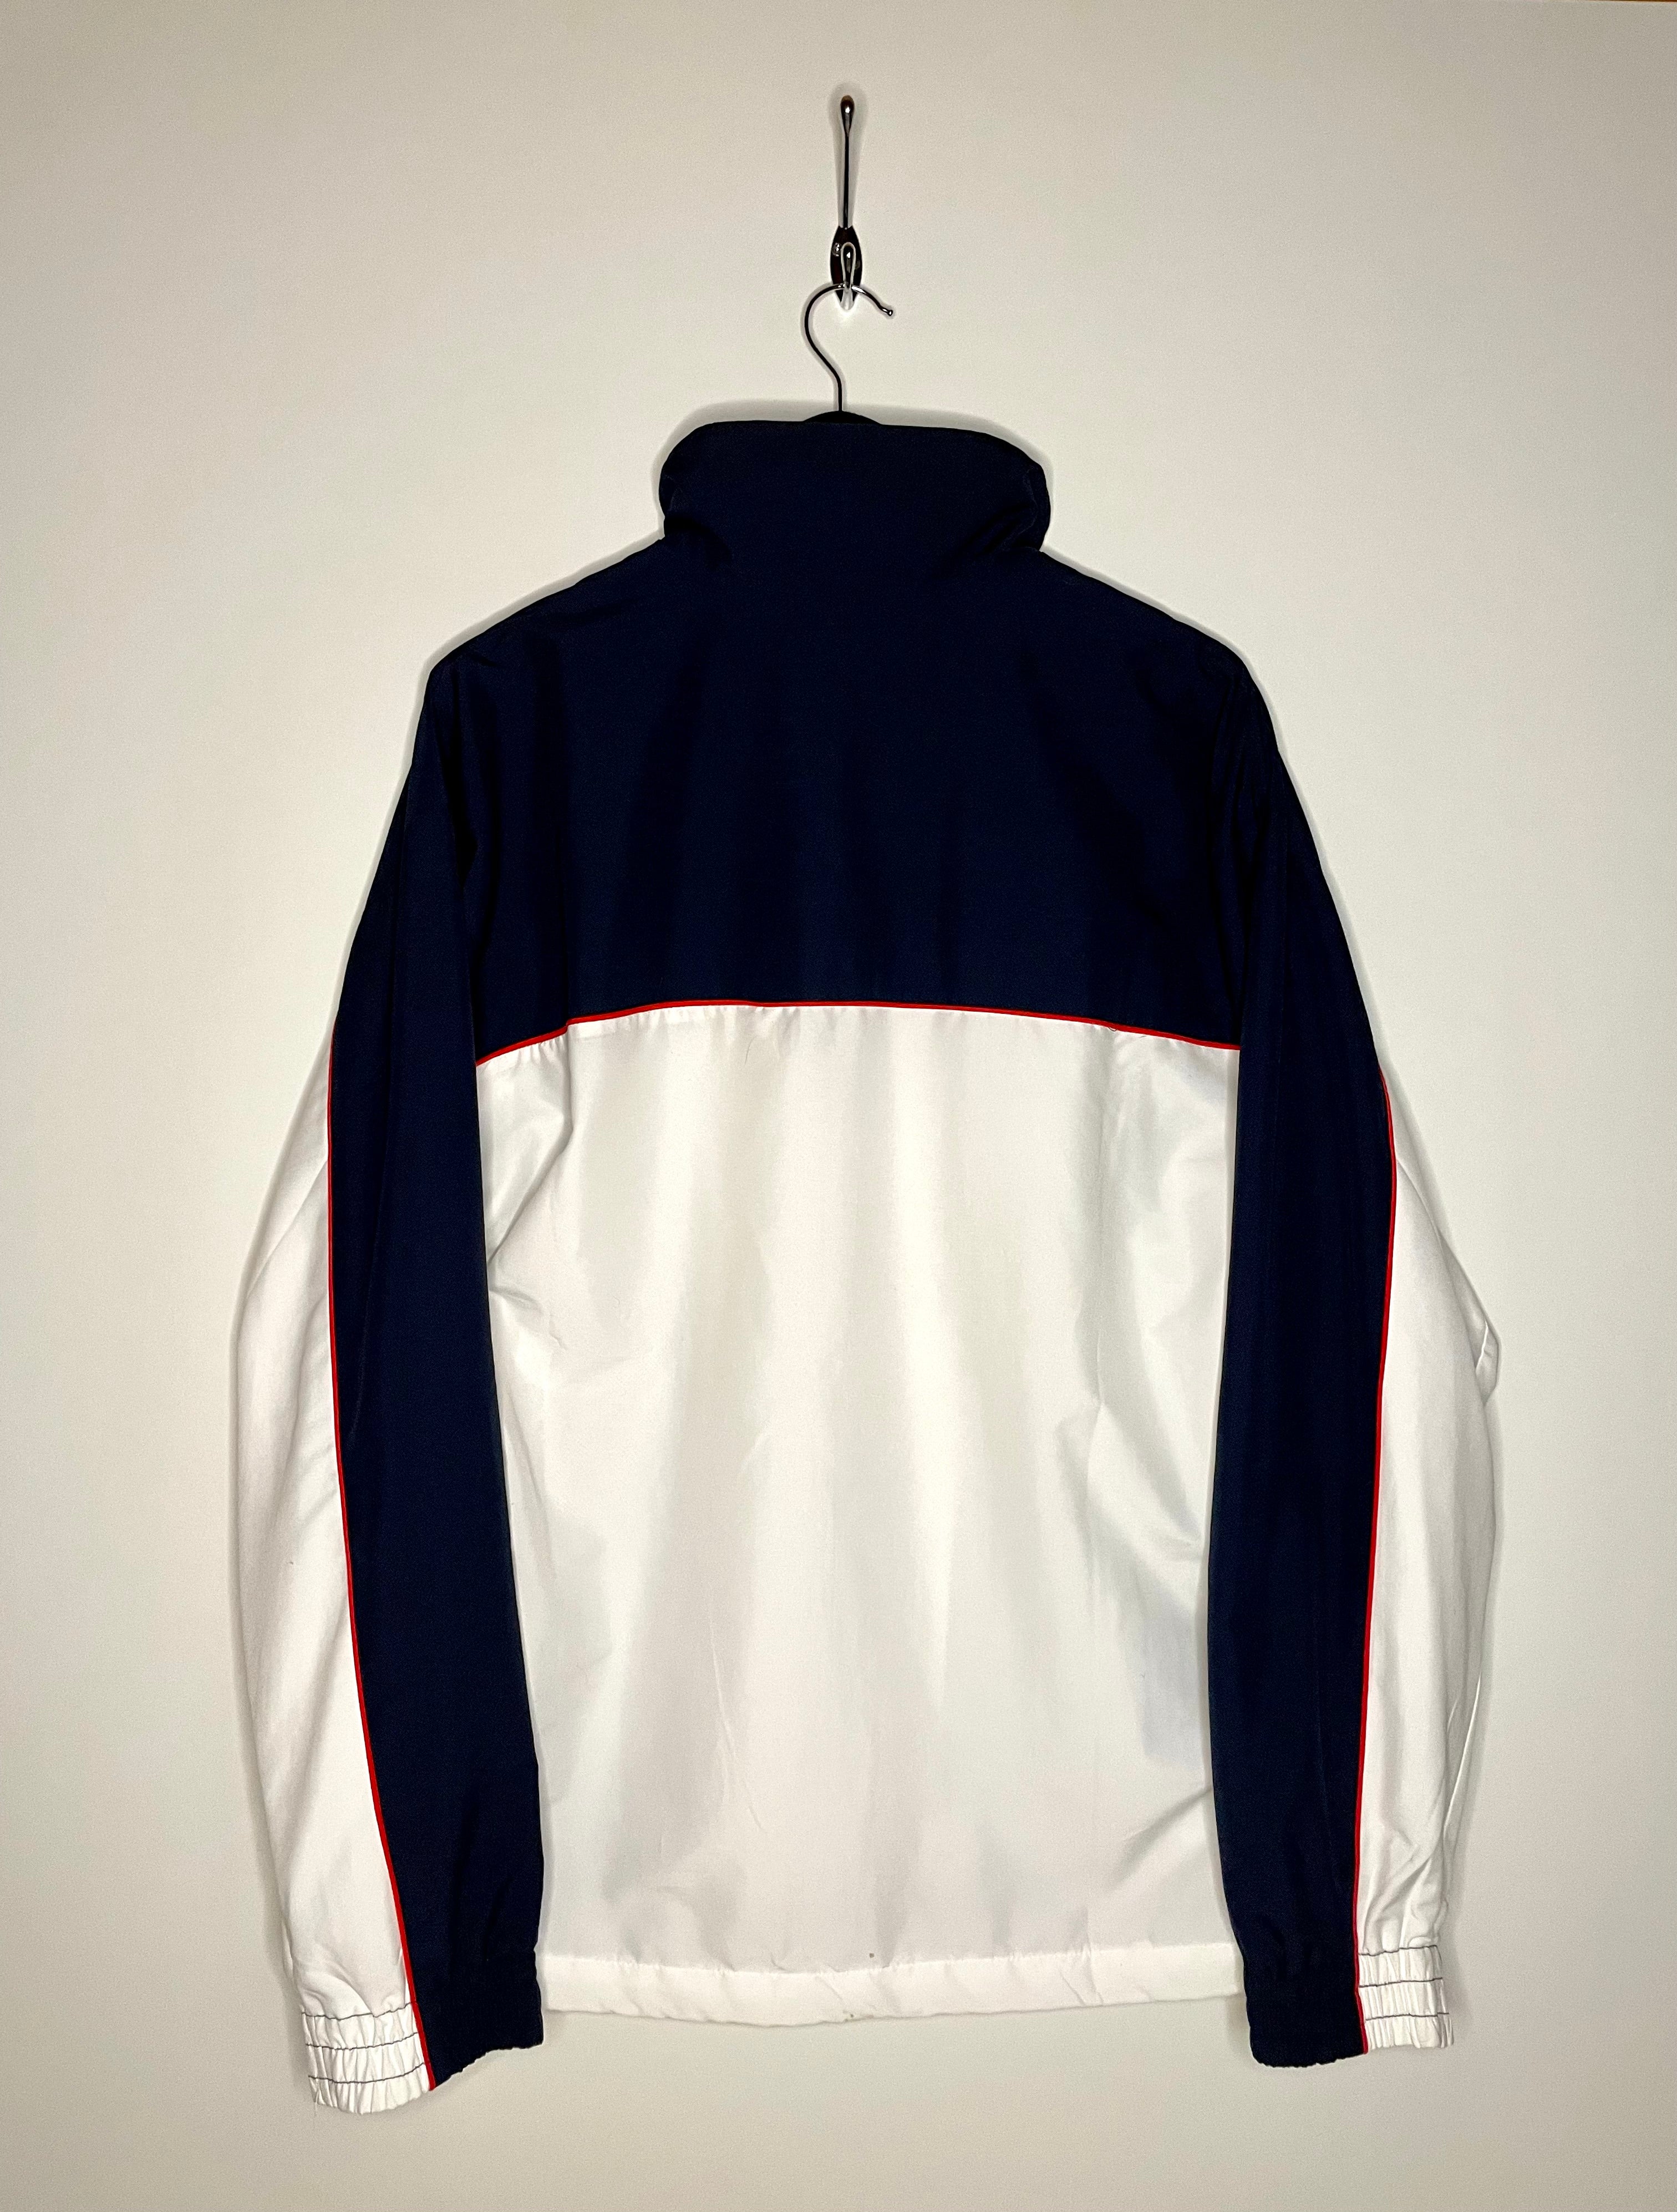 Lotto training jacket blue/white size XL